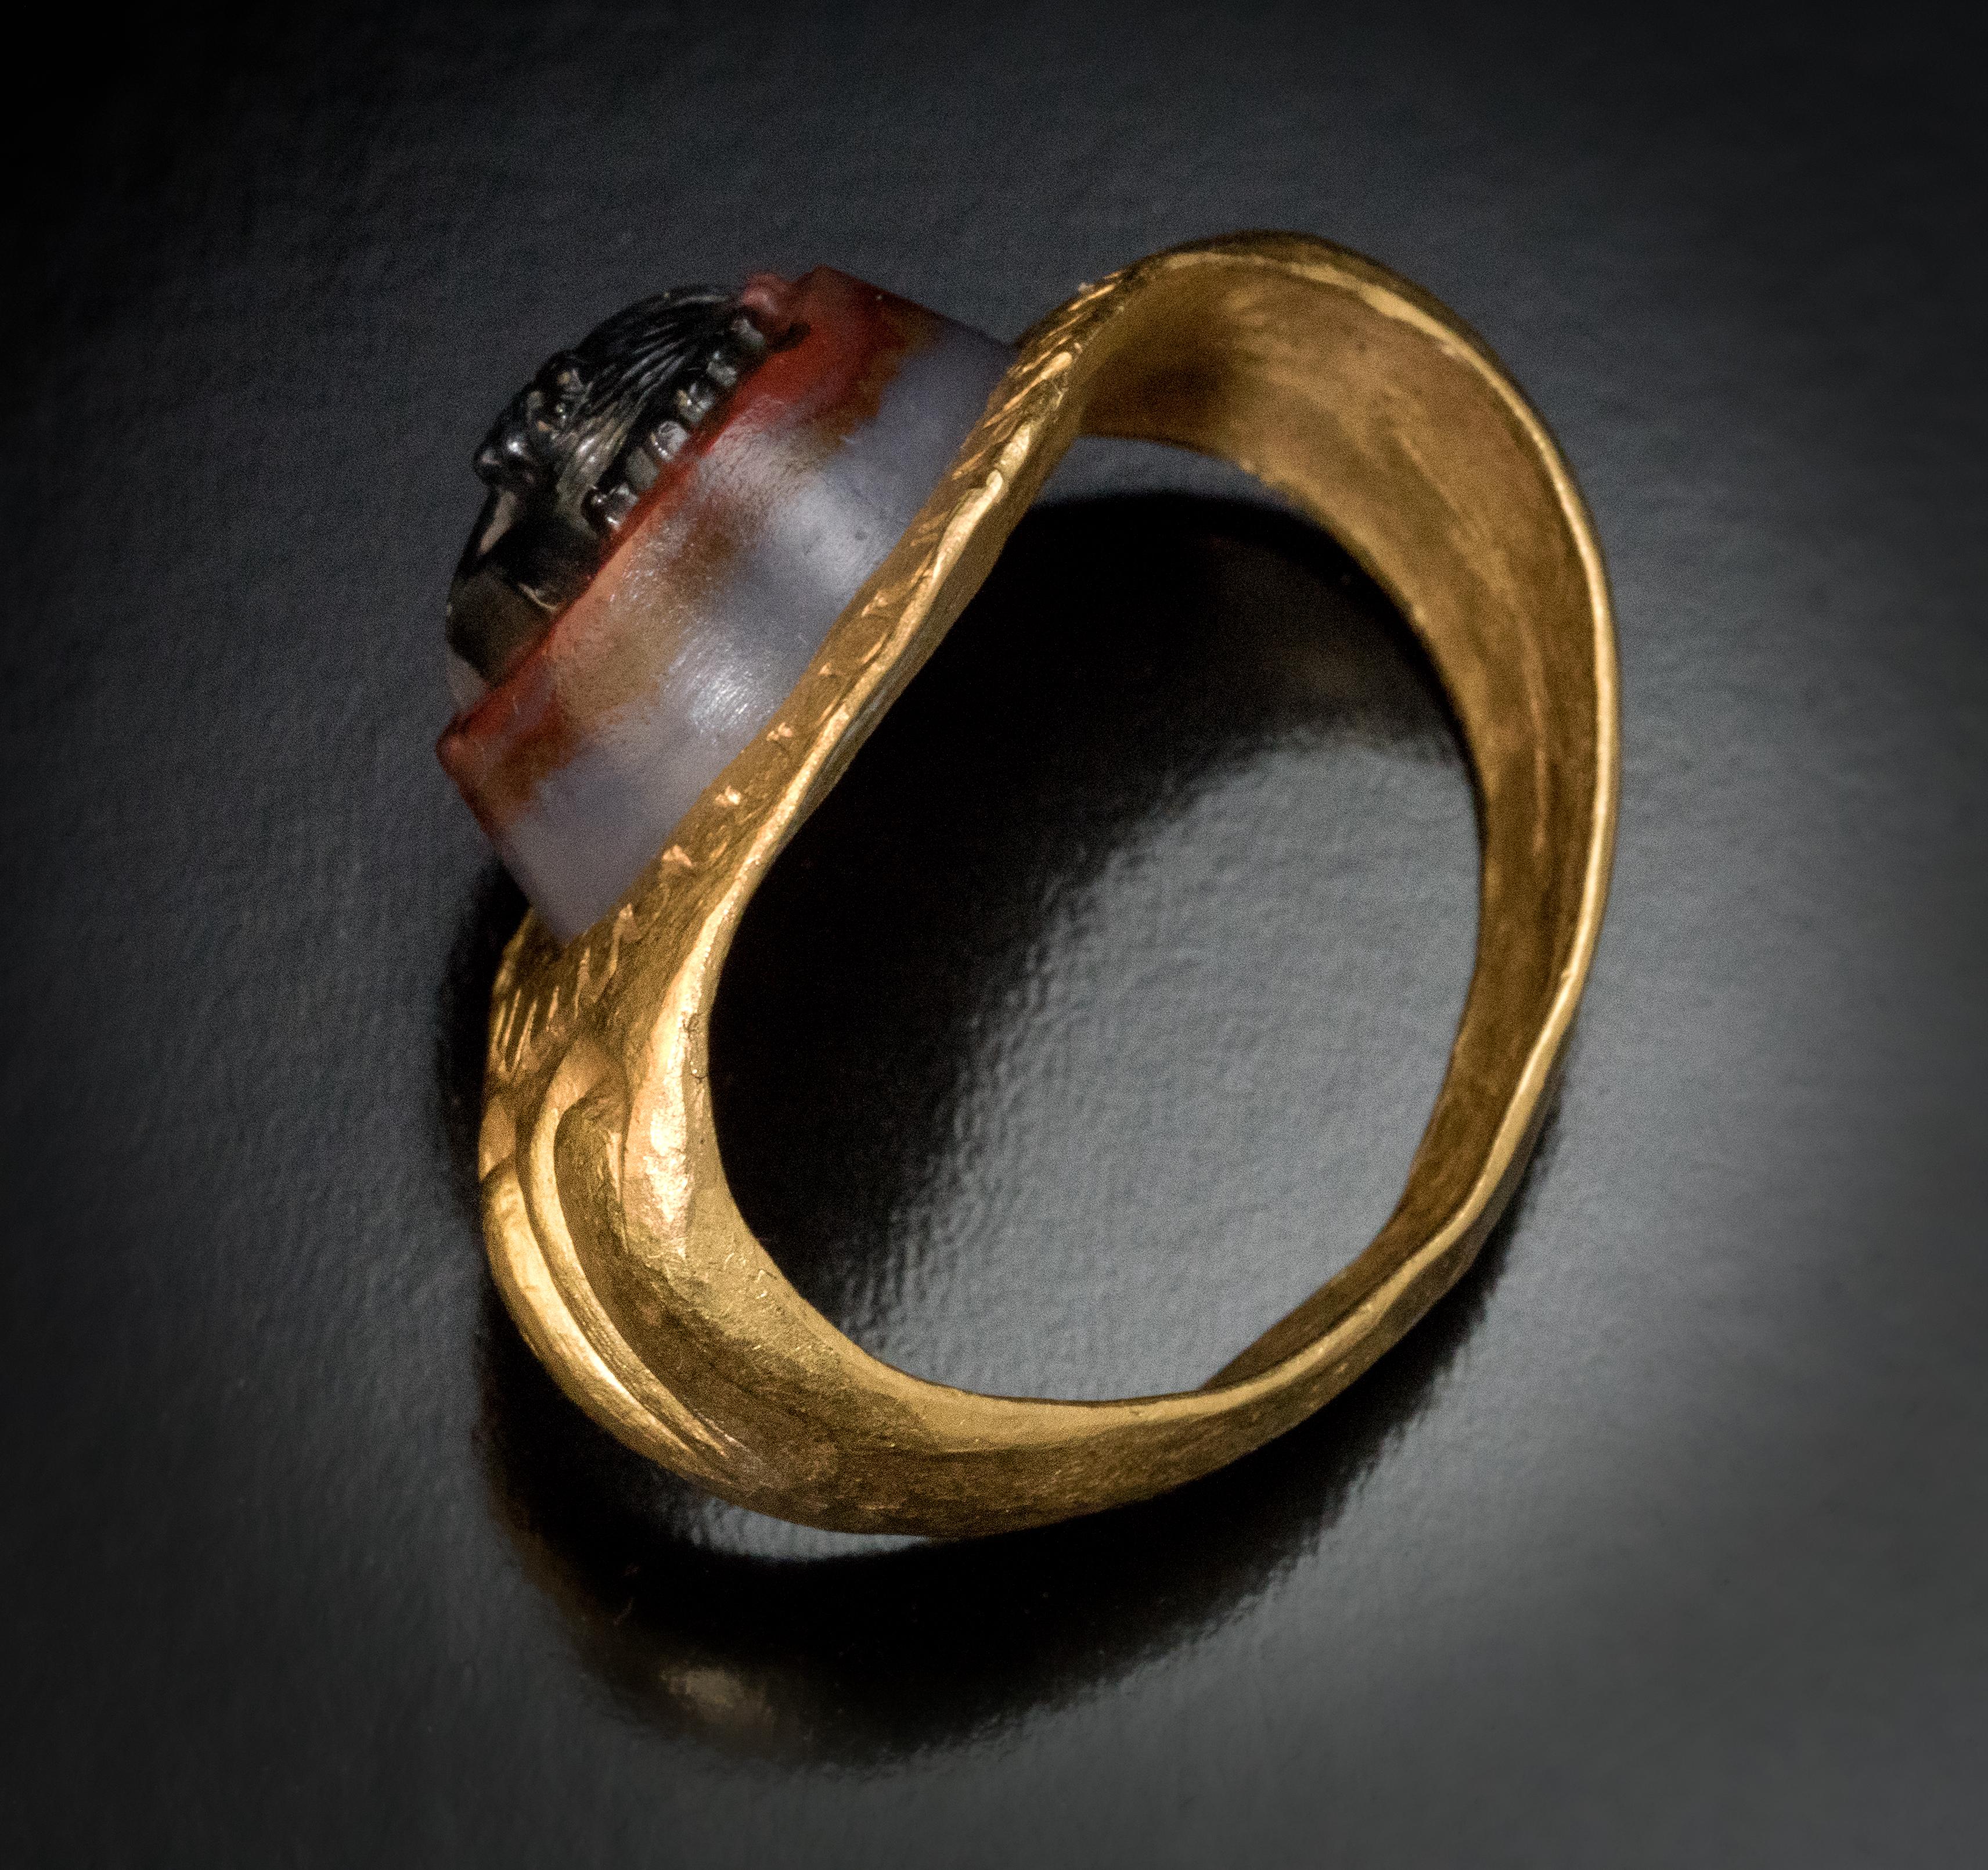 Römisches Reich, 2. 3. Jahrhundert v. Chr.

Dieser massive Ring aus massivem Gold mit breiten Schultern ist von sehr guter Verarbeitung. Der Ring ist aus hochkarätigem Gold (ca. 24 Karat) gefertigt. In der Mitte befindet sich ein konischer,